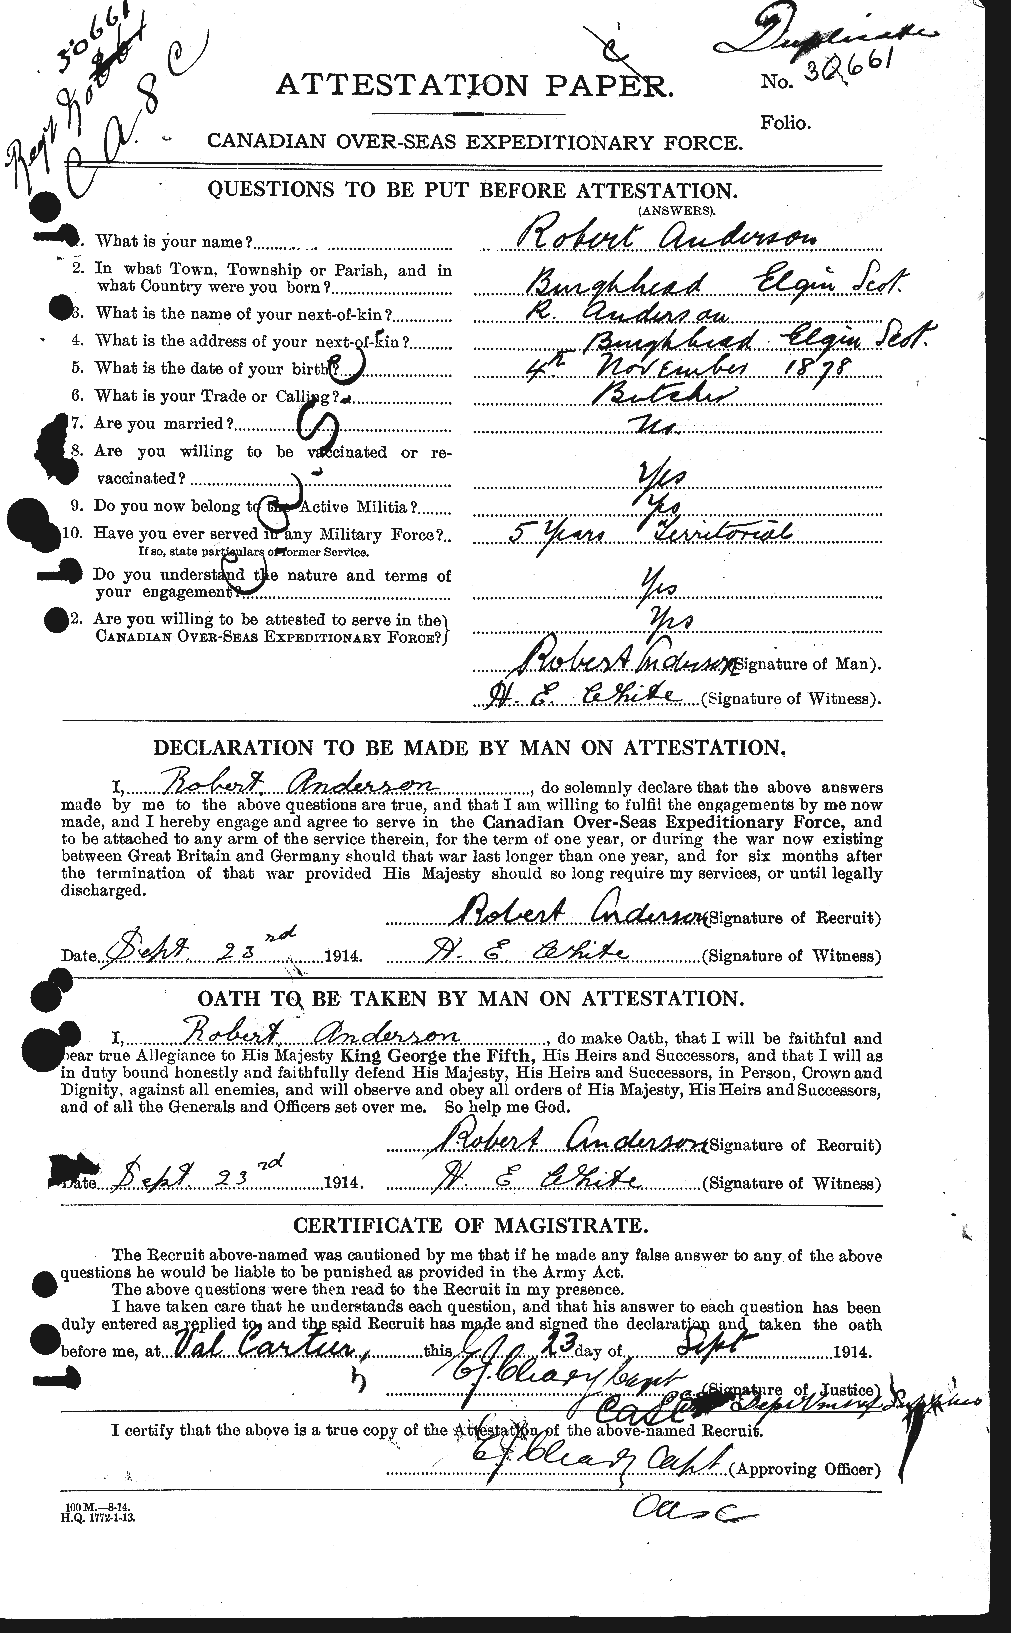 Dossiers du Personnel de la Première Guerre mondiale - CEC 207289a